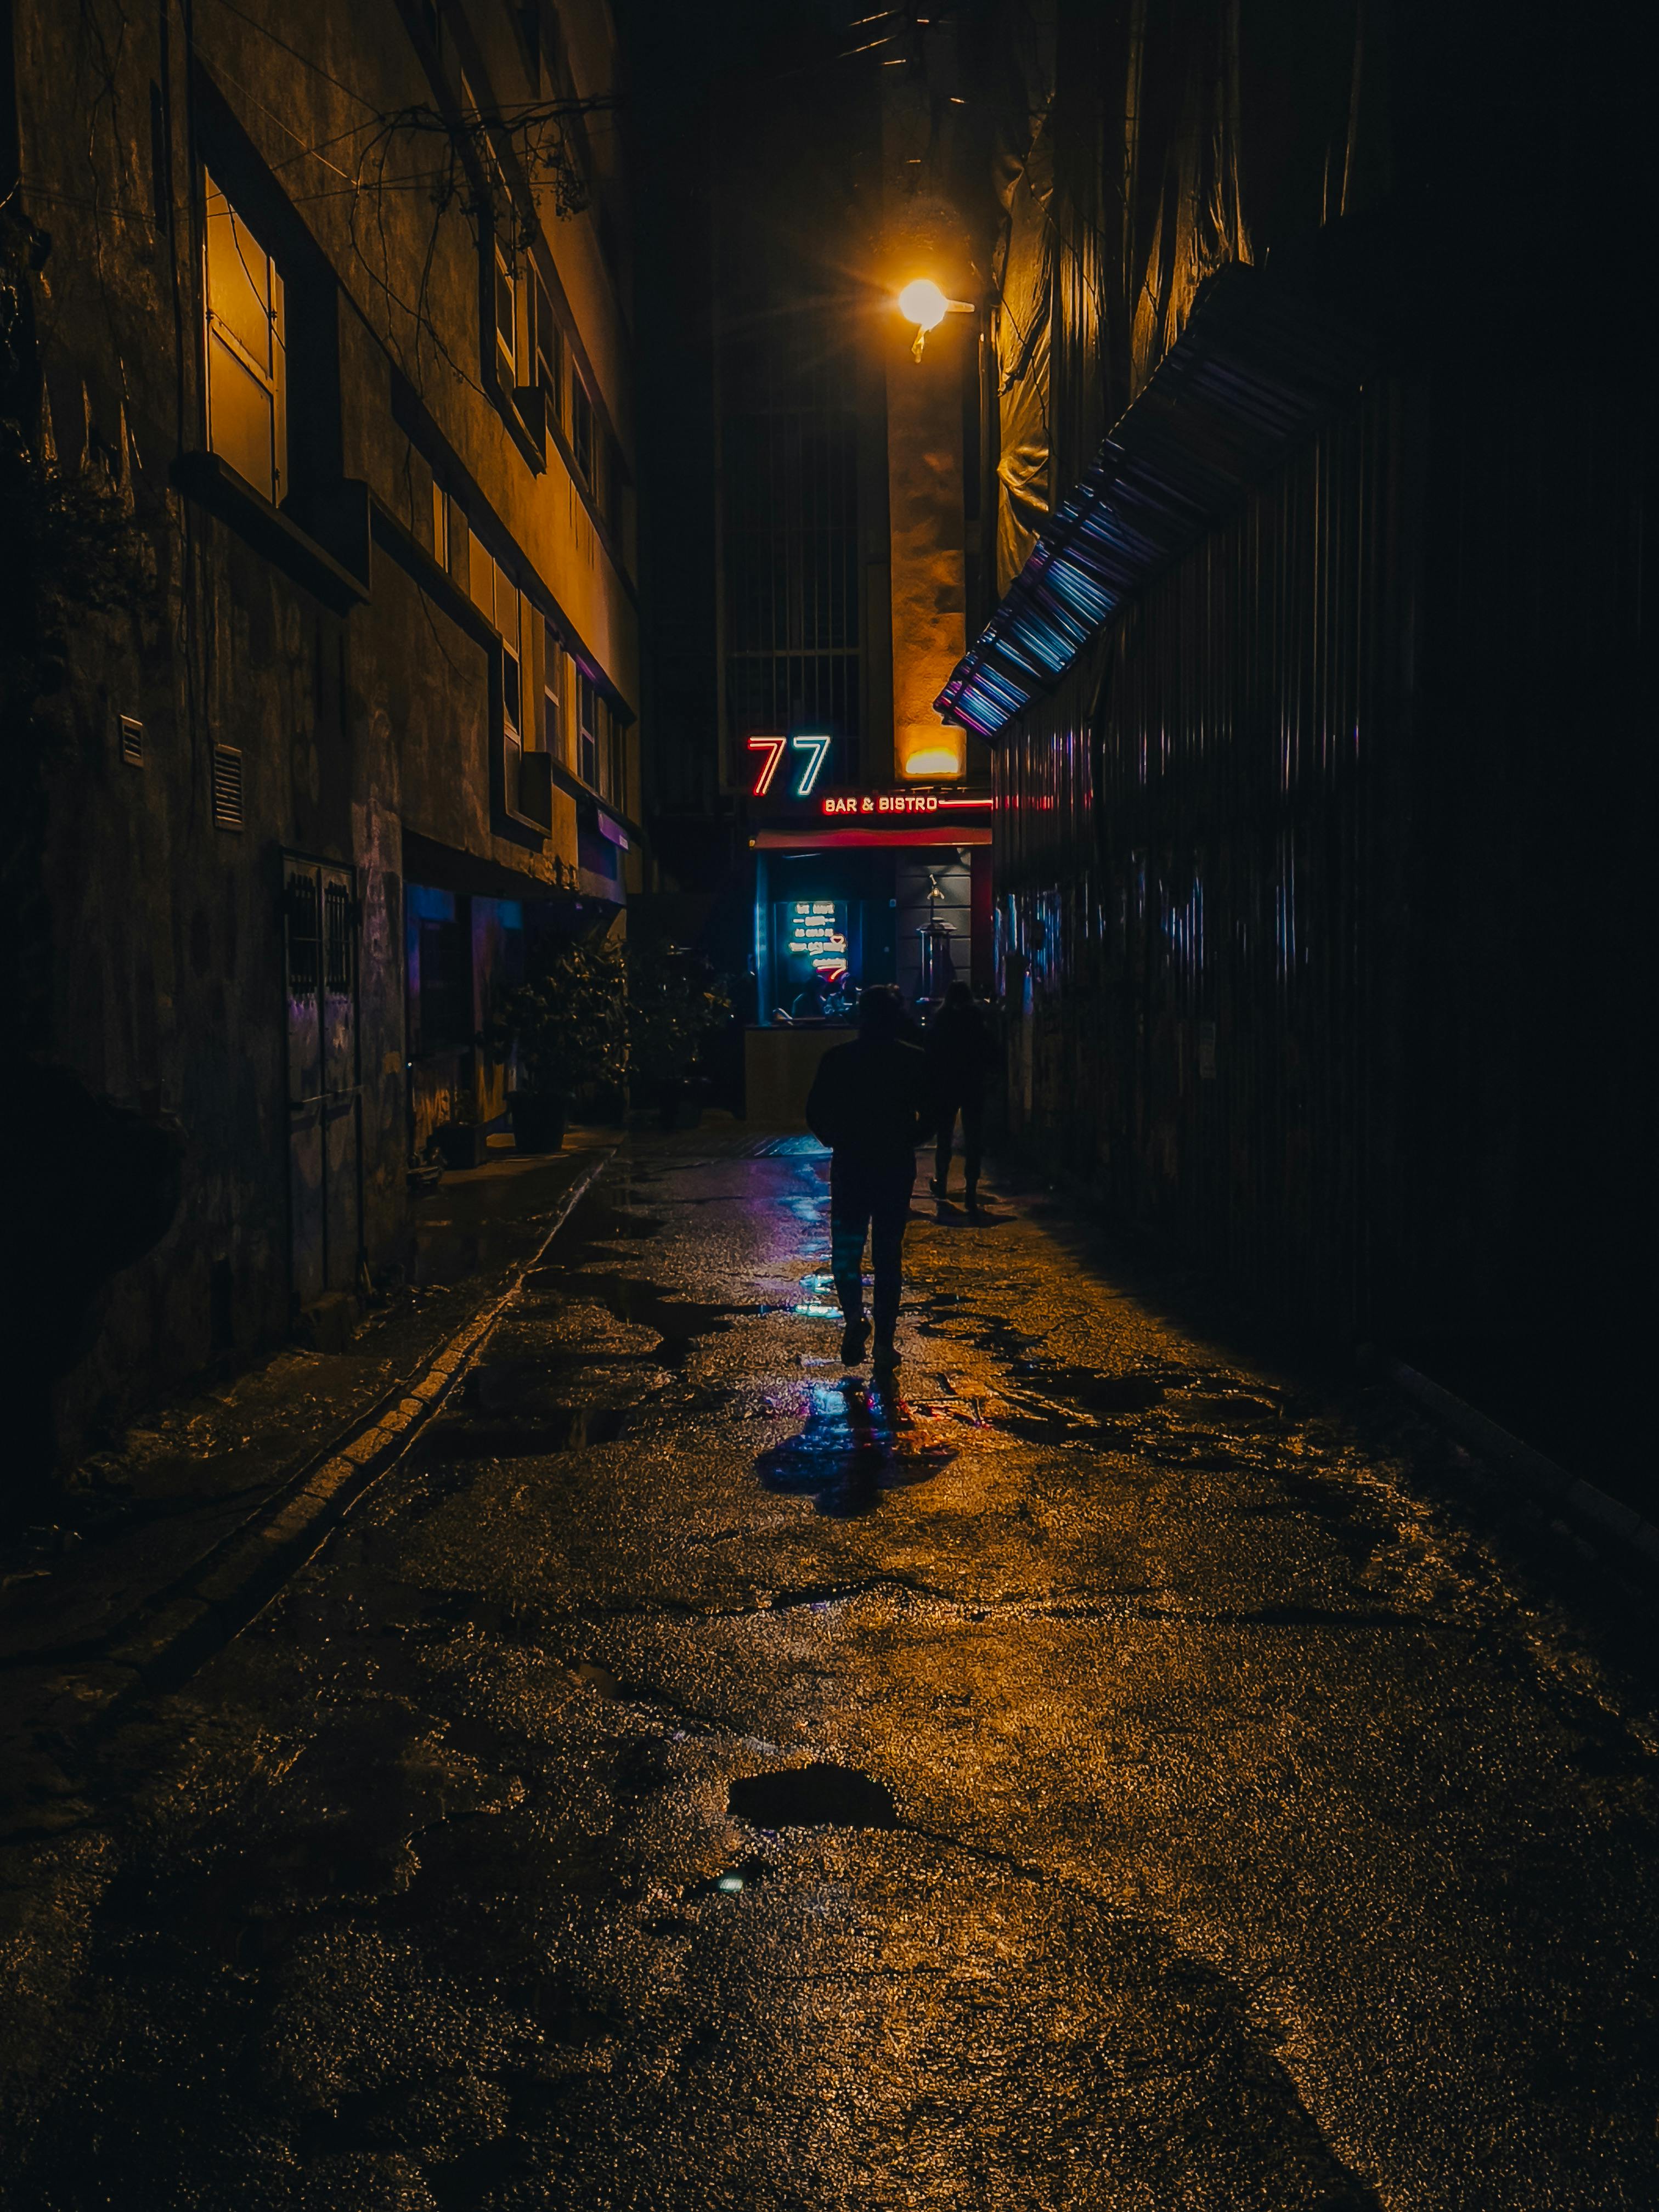 Tổng hợp những bức ảnh đường phố tối đầy bí ẩn